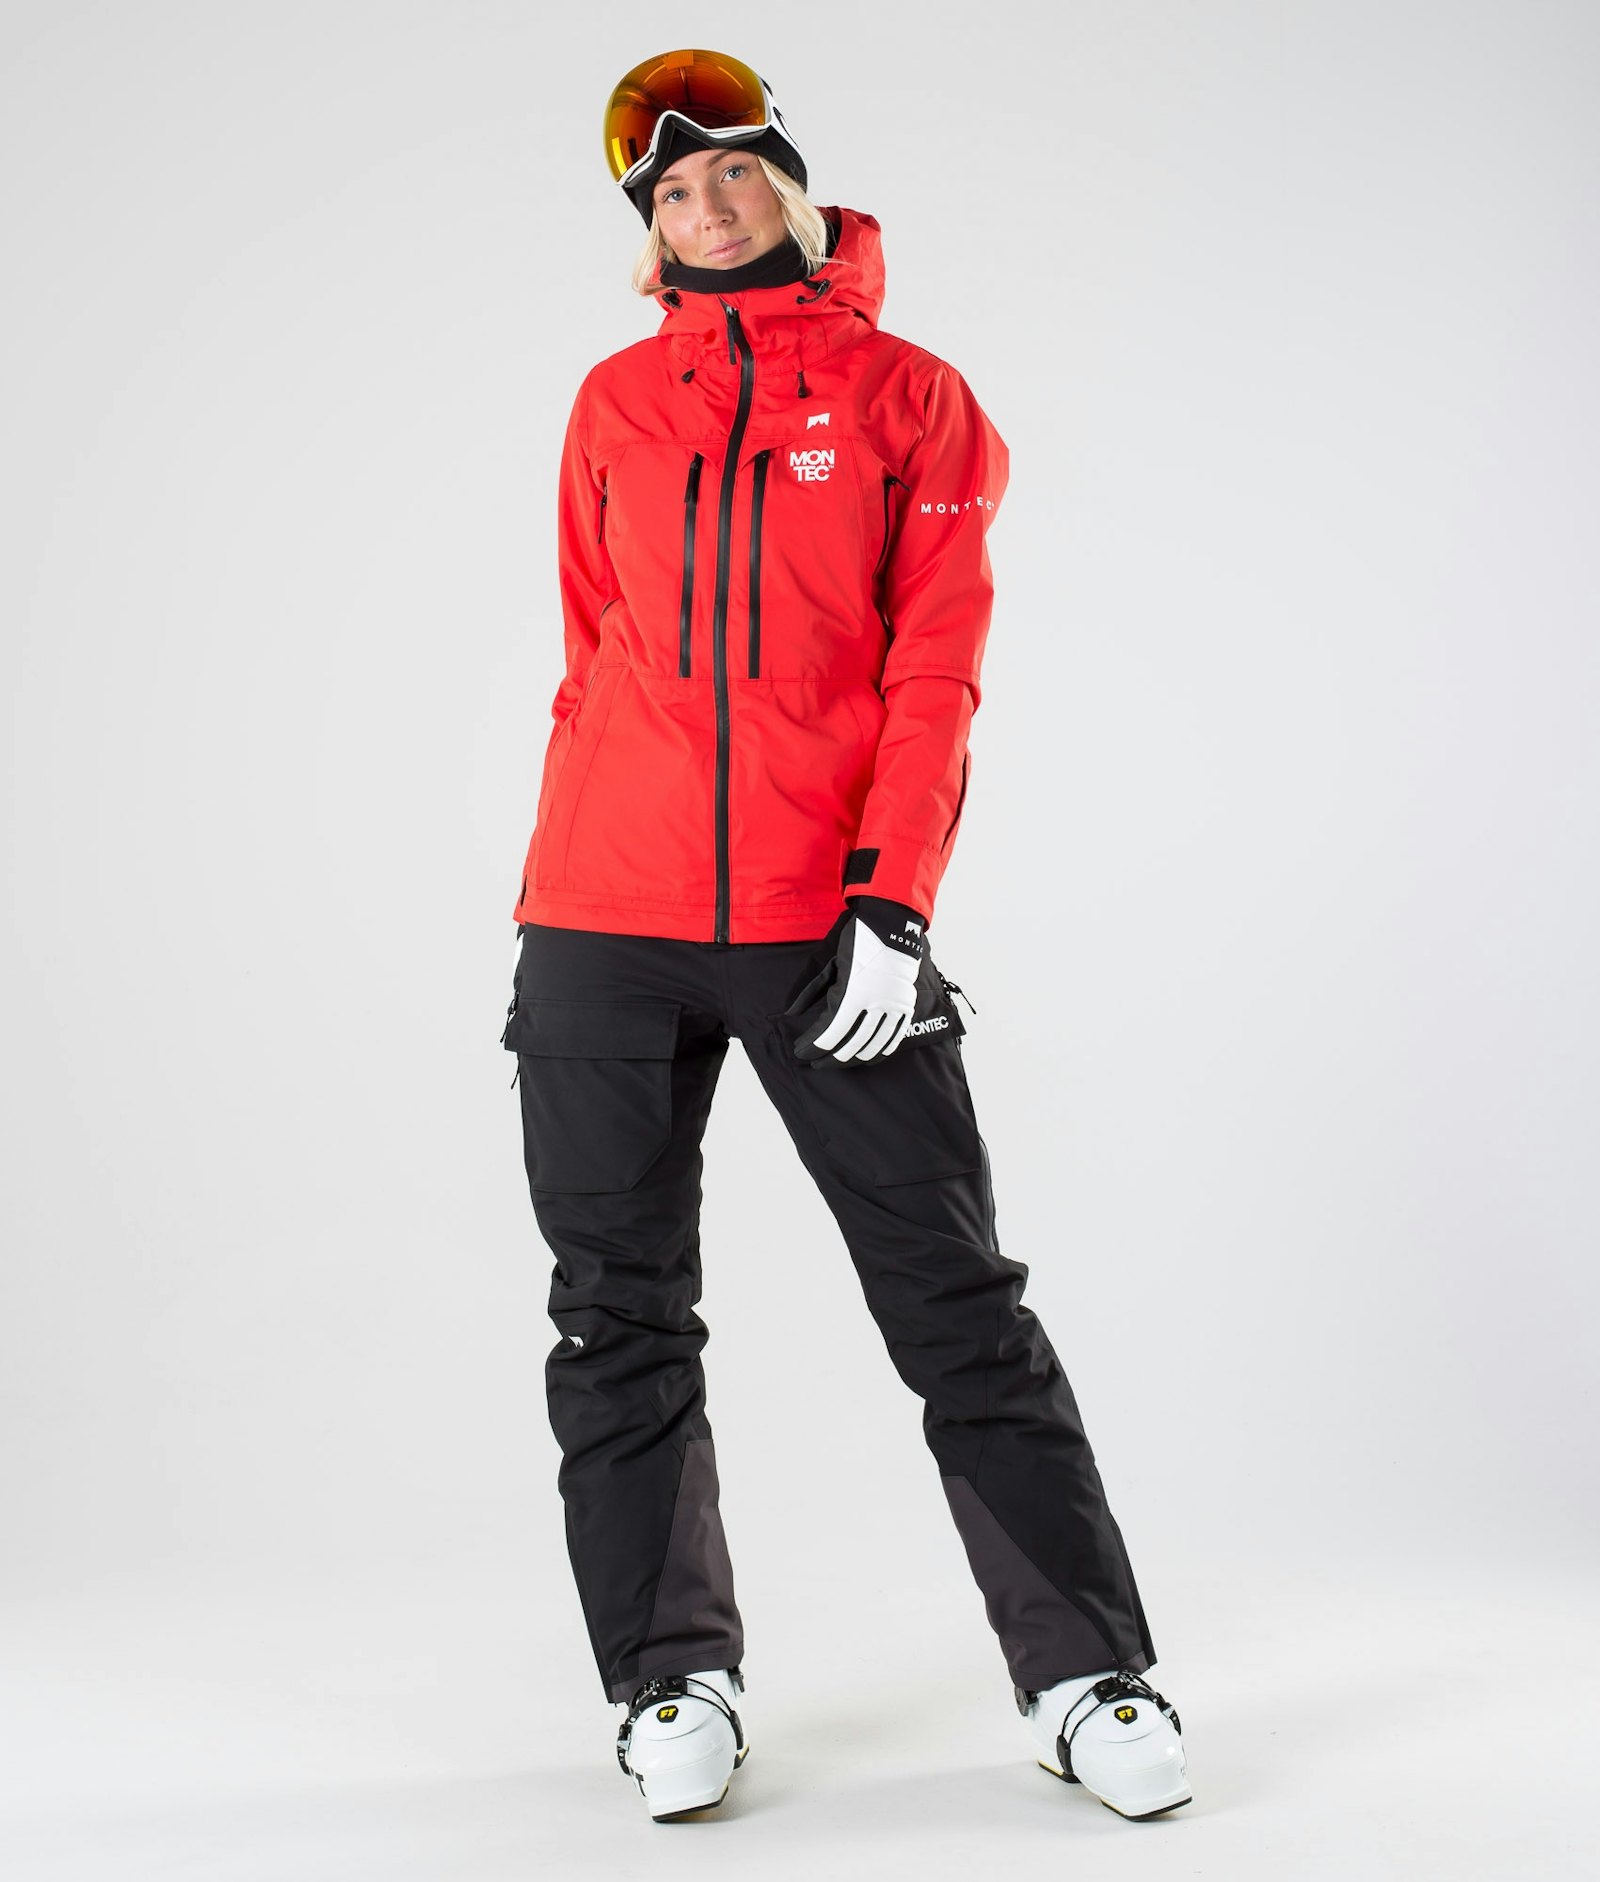 Moss W 2019 スキージャケット レディース Red